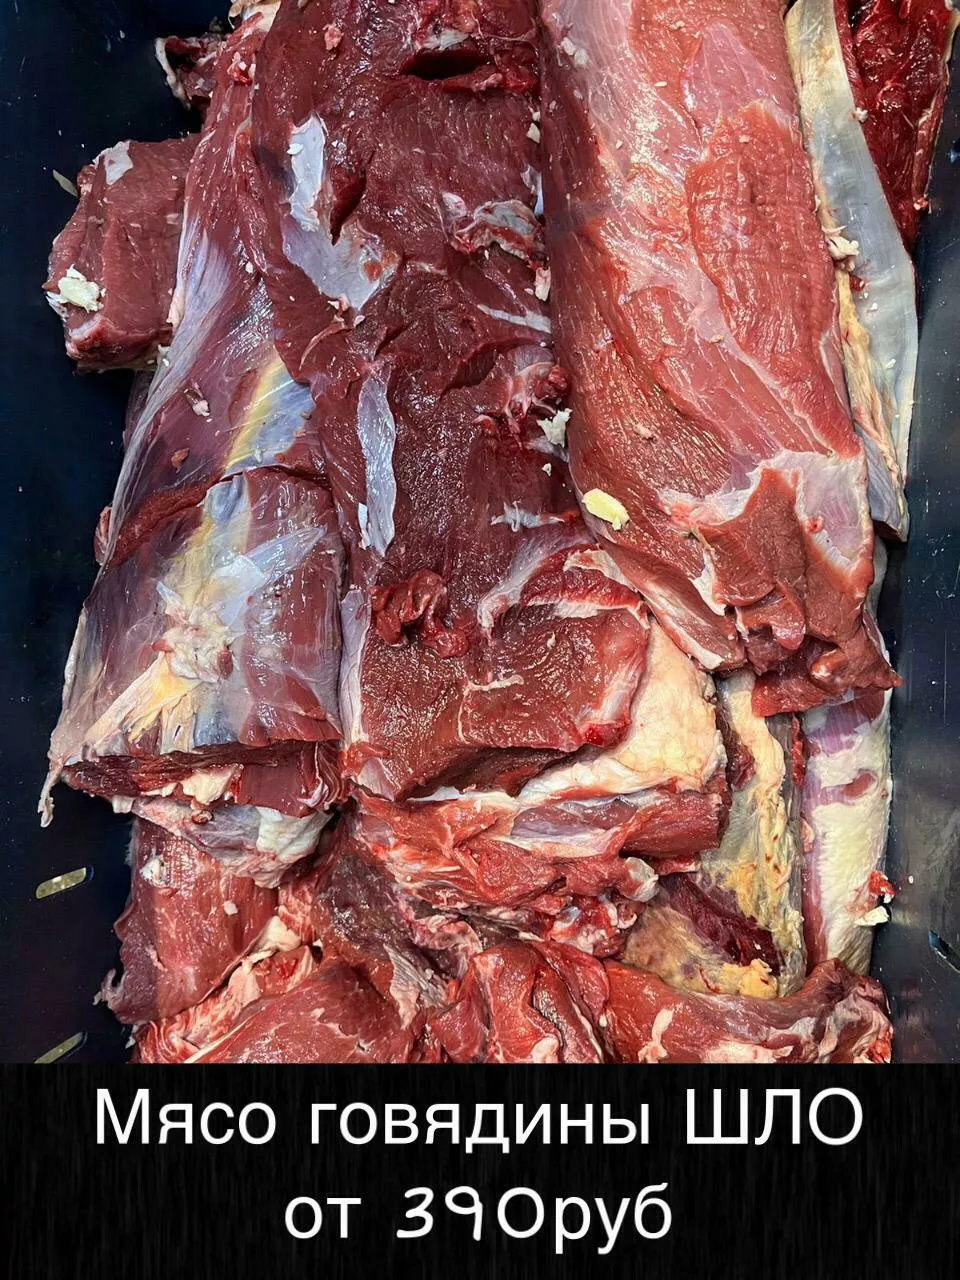 Фотография продукта Мясо - говядина и др. оптом